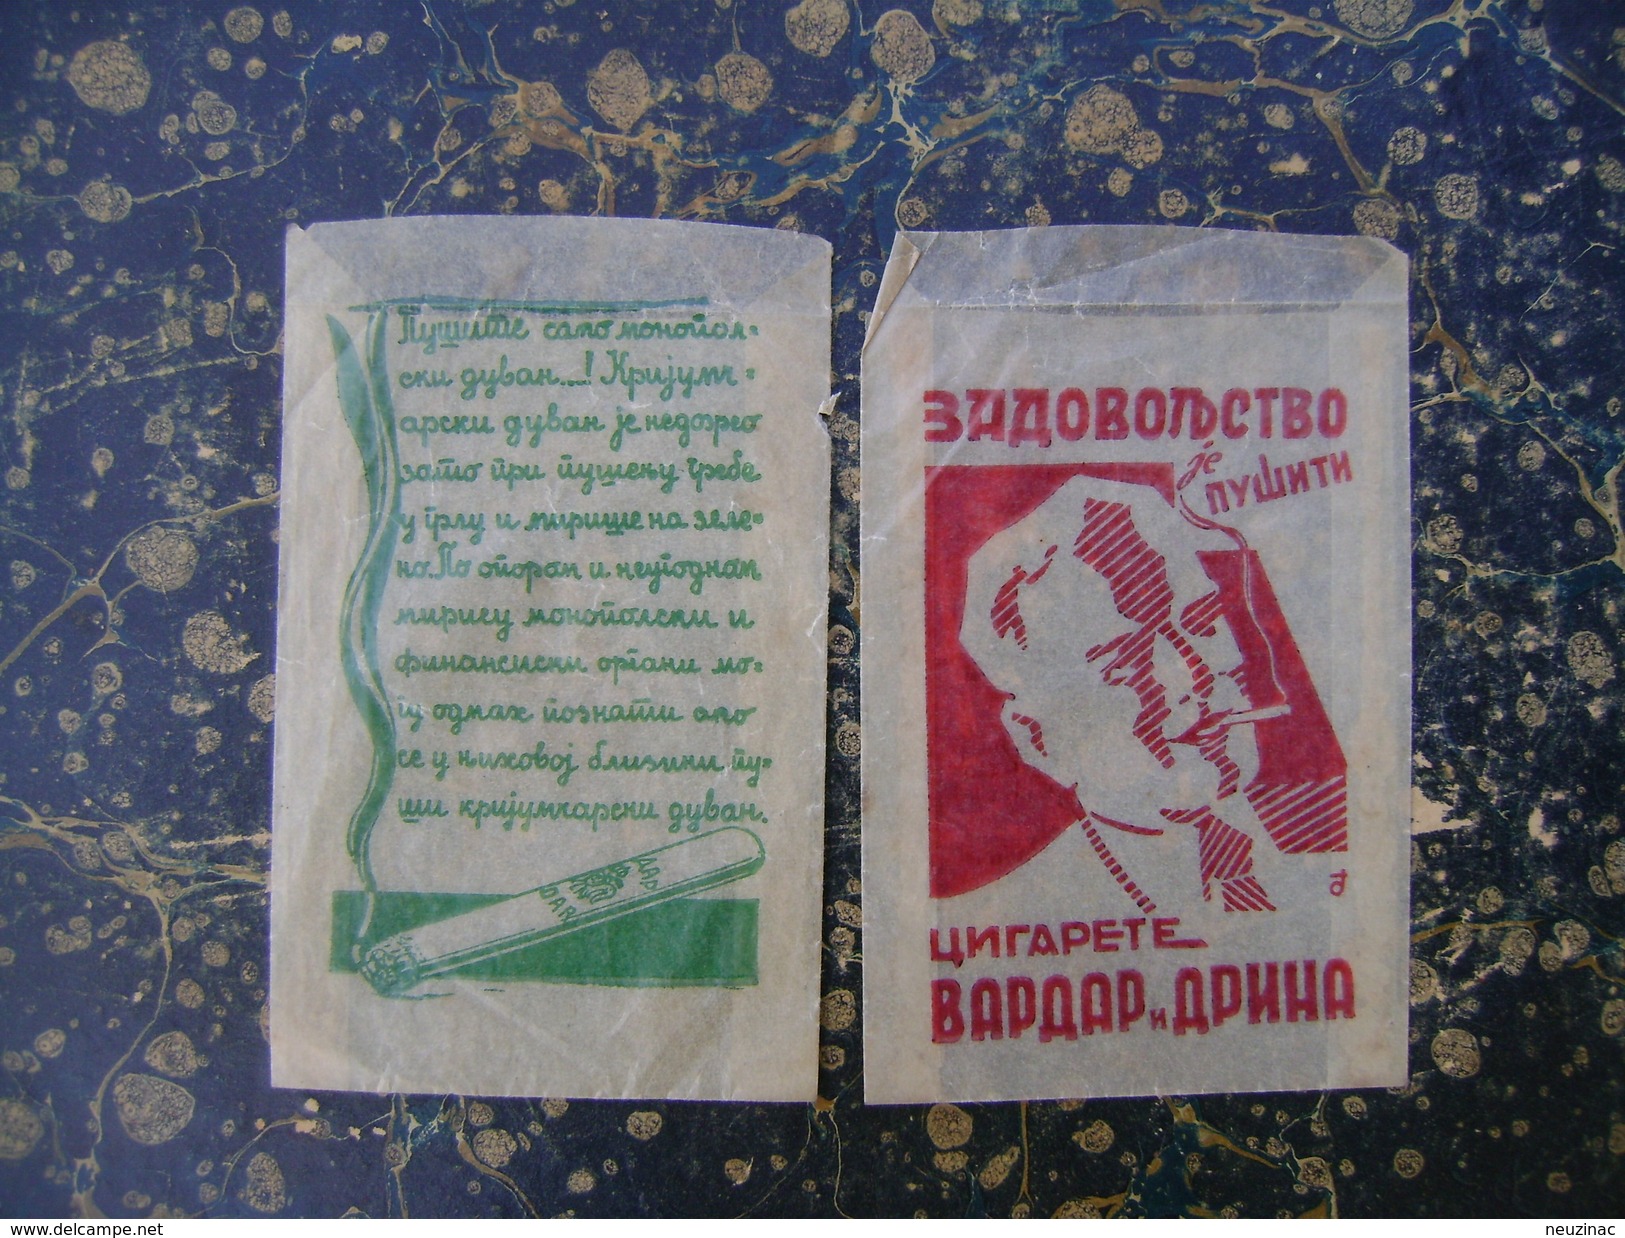 Yugoslavia-Serbia-tobacco Bags-67x97mm-cca 1925  (3850) - Empty Tobacco Boxes